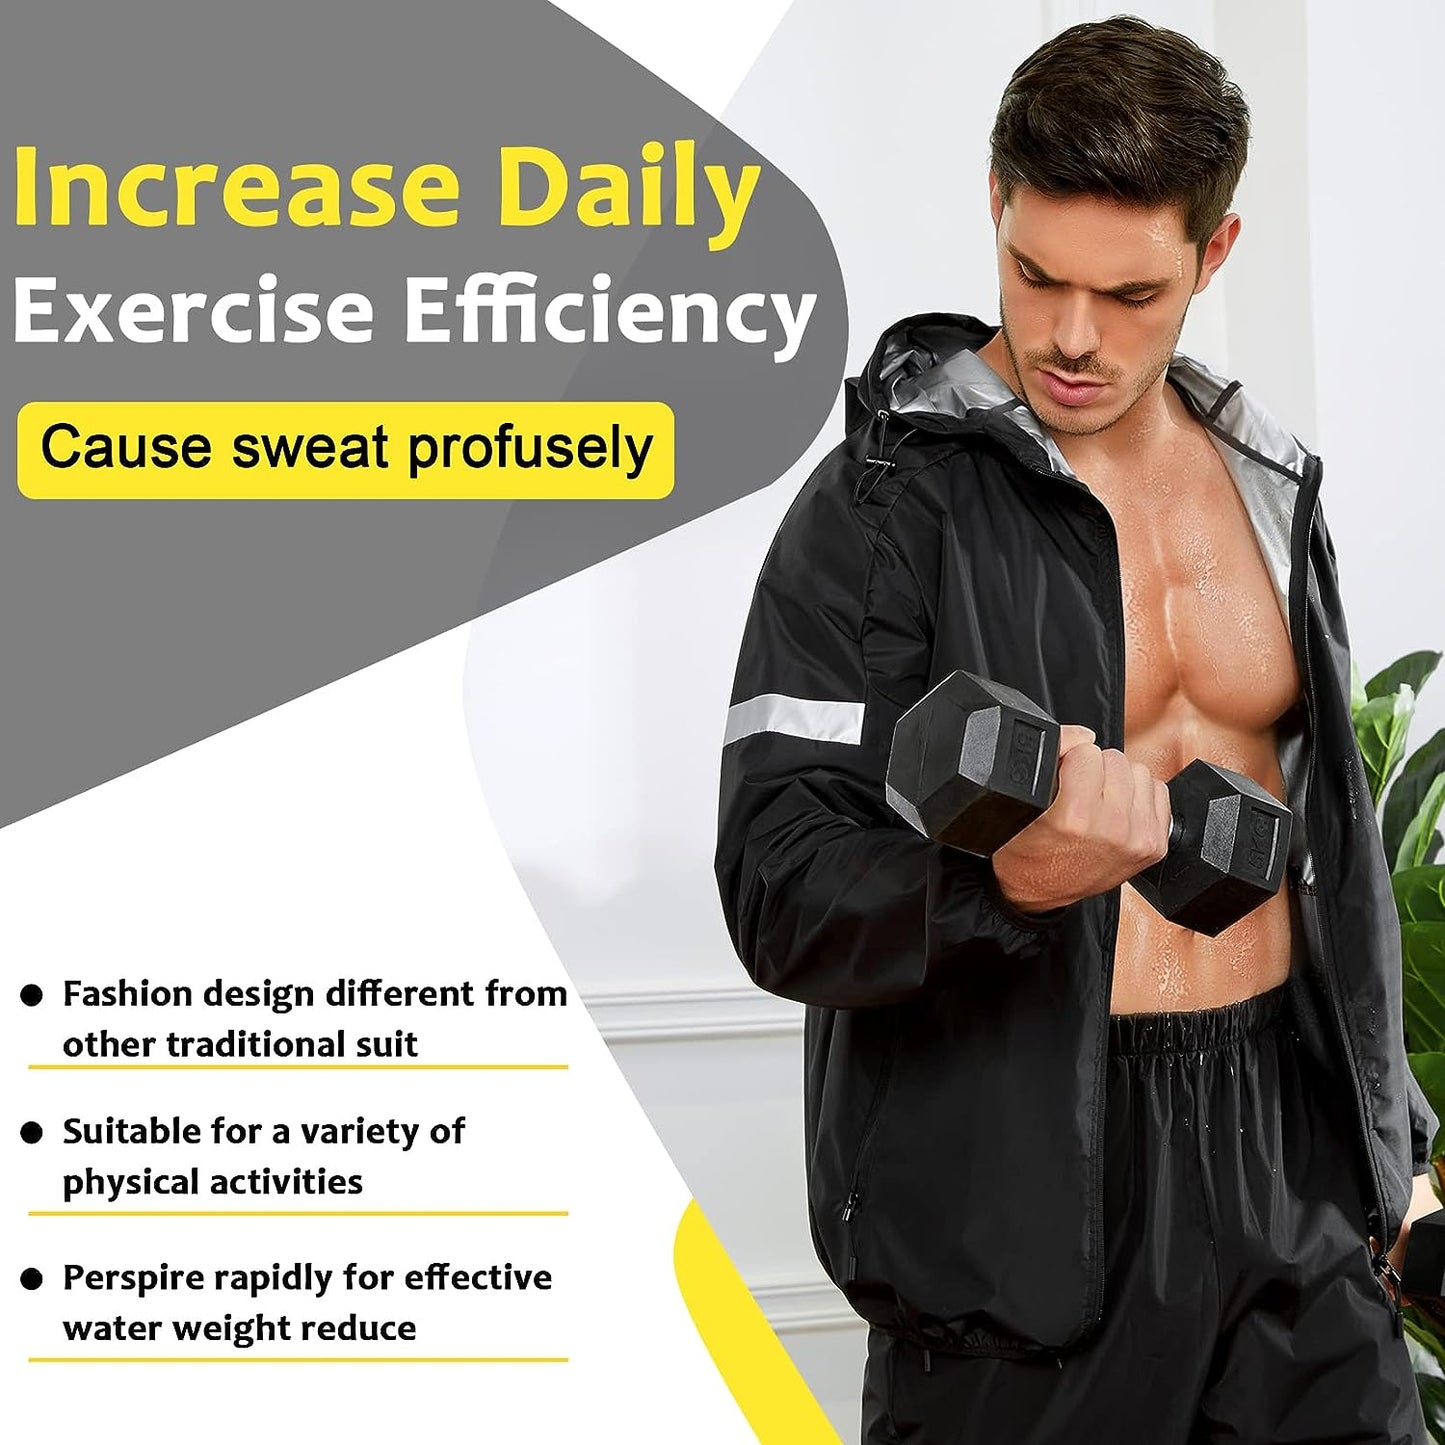 Sauna Suit for Men Sweat Jacket for Men Sweat Sauna Pants Gym Workout Sweat Suit